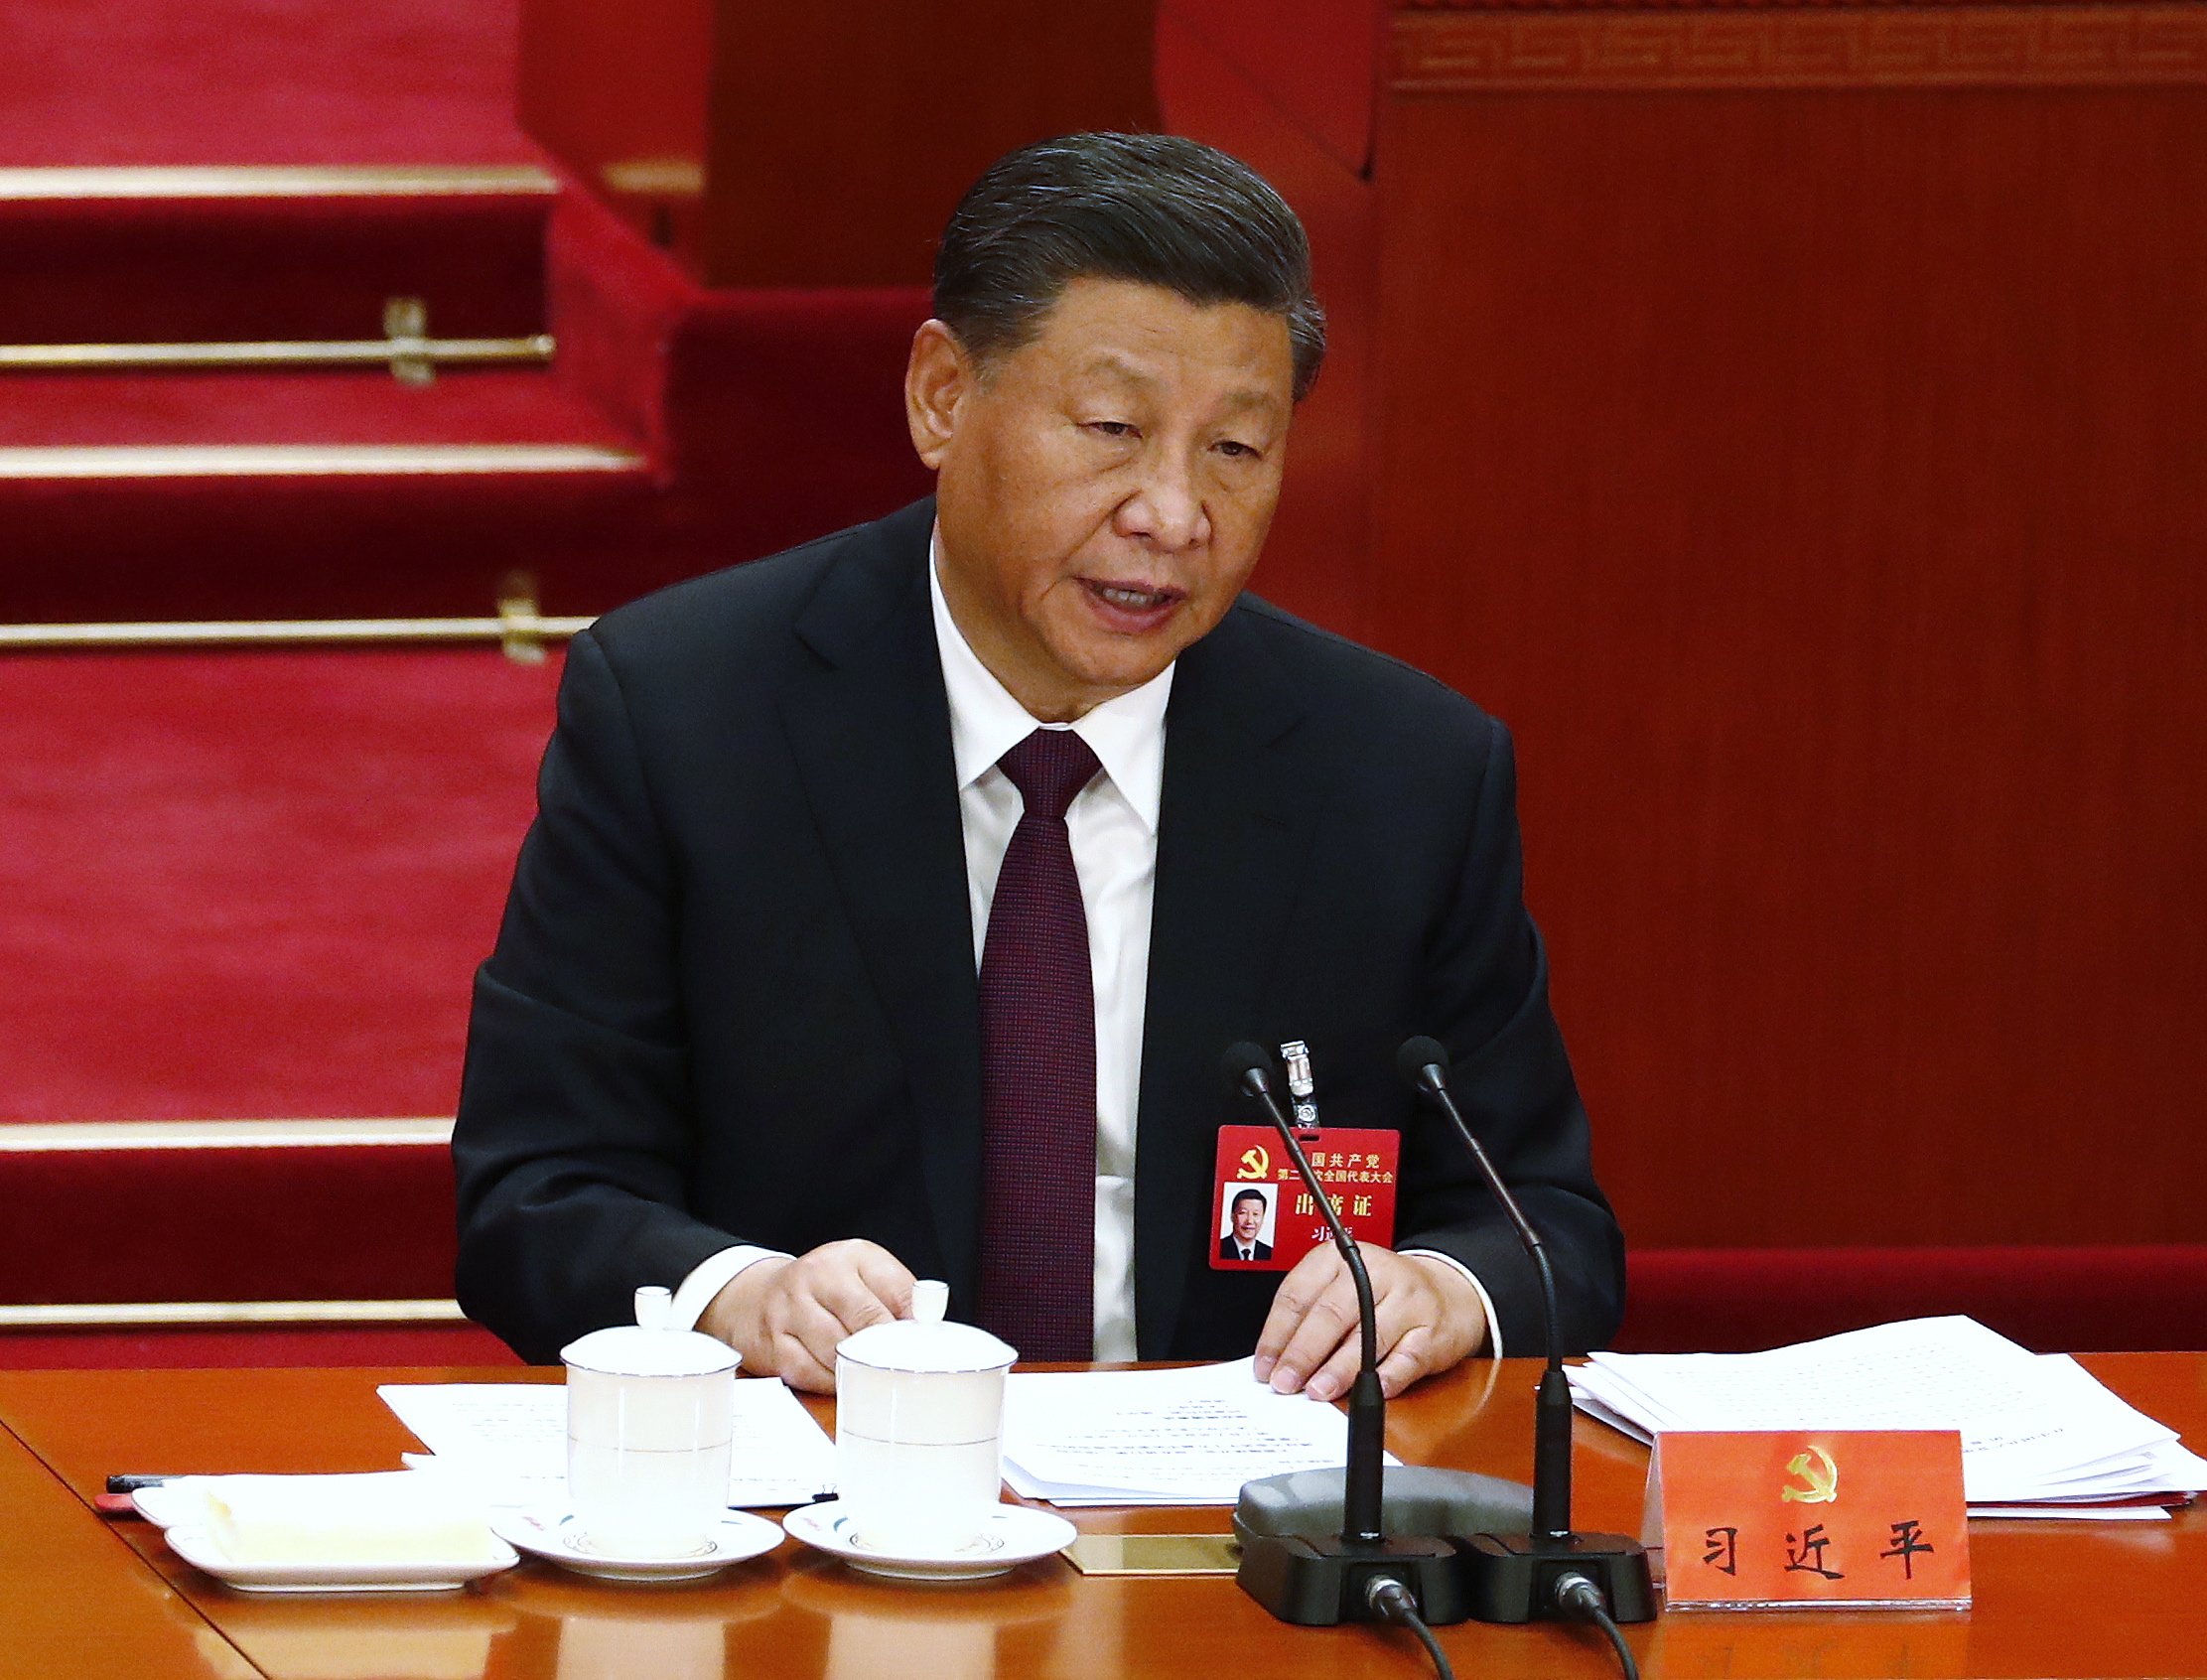 ¿Por qué es casi imposible que haya protestas en China contra Xi Jinping?